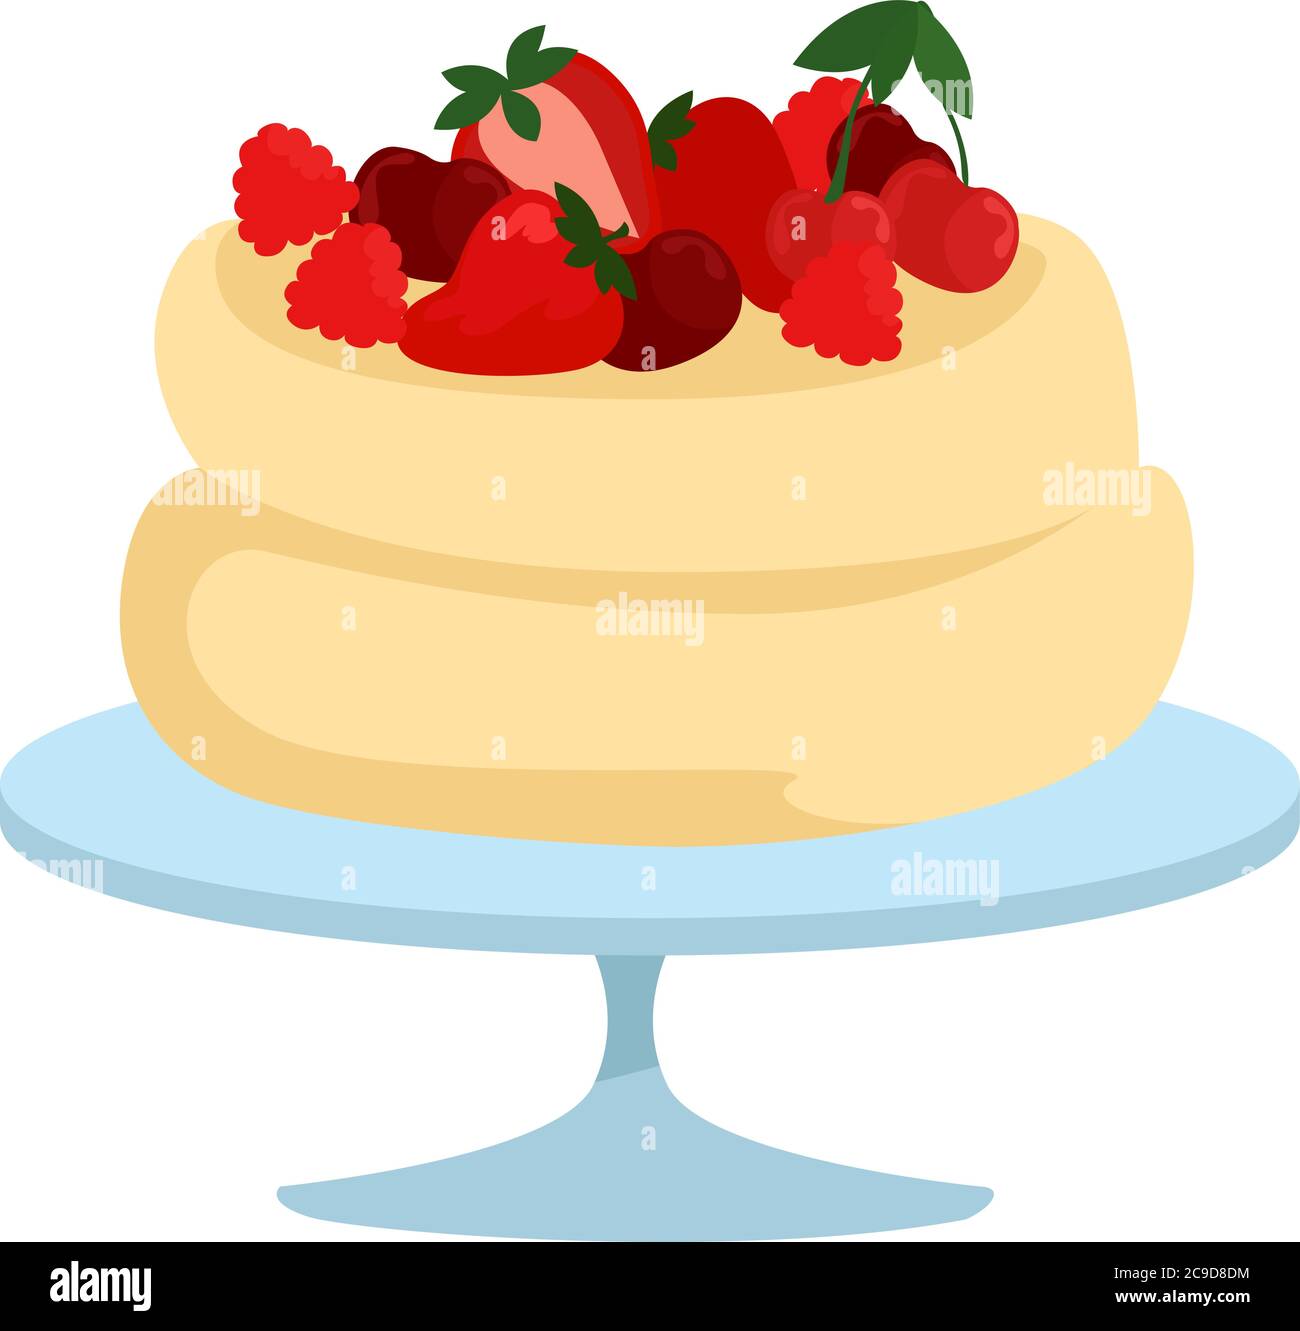 Pavlova cake, illustration, vector on white background Stock Vector